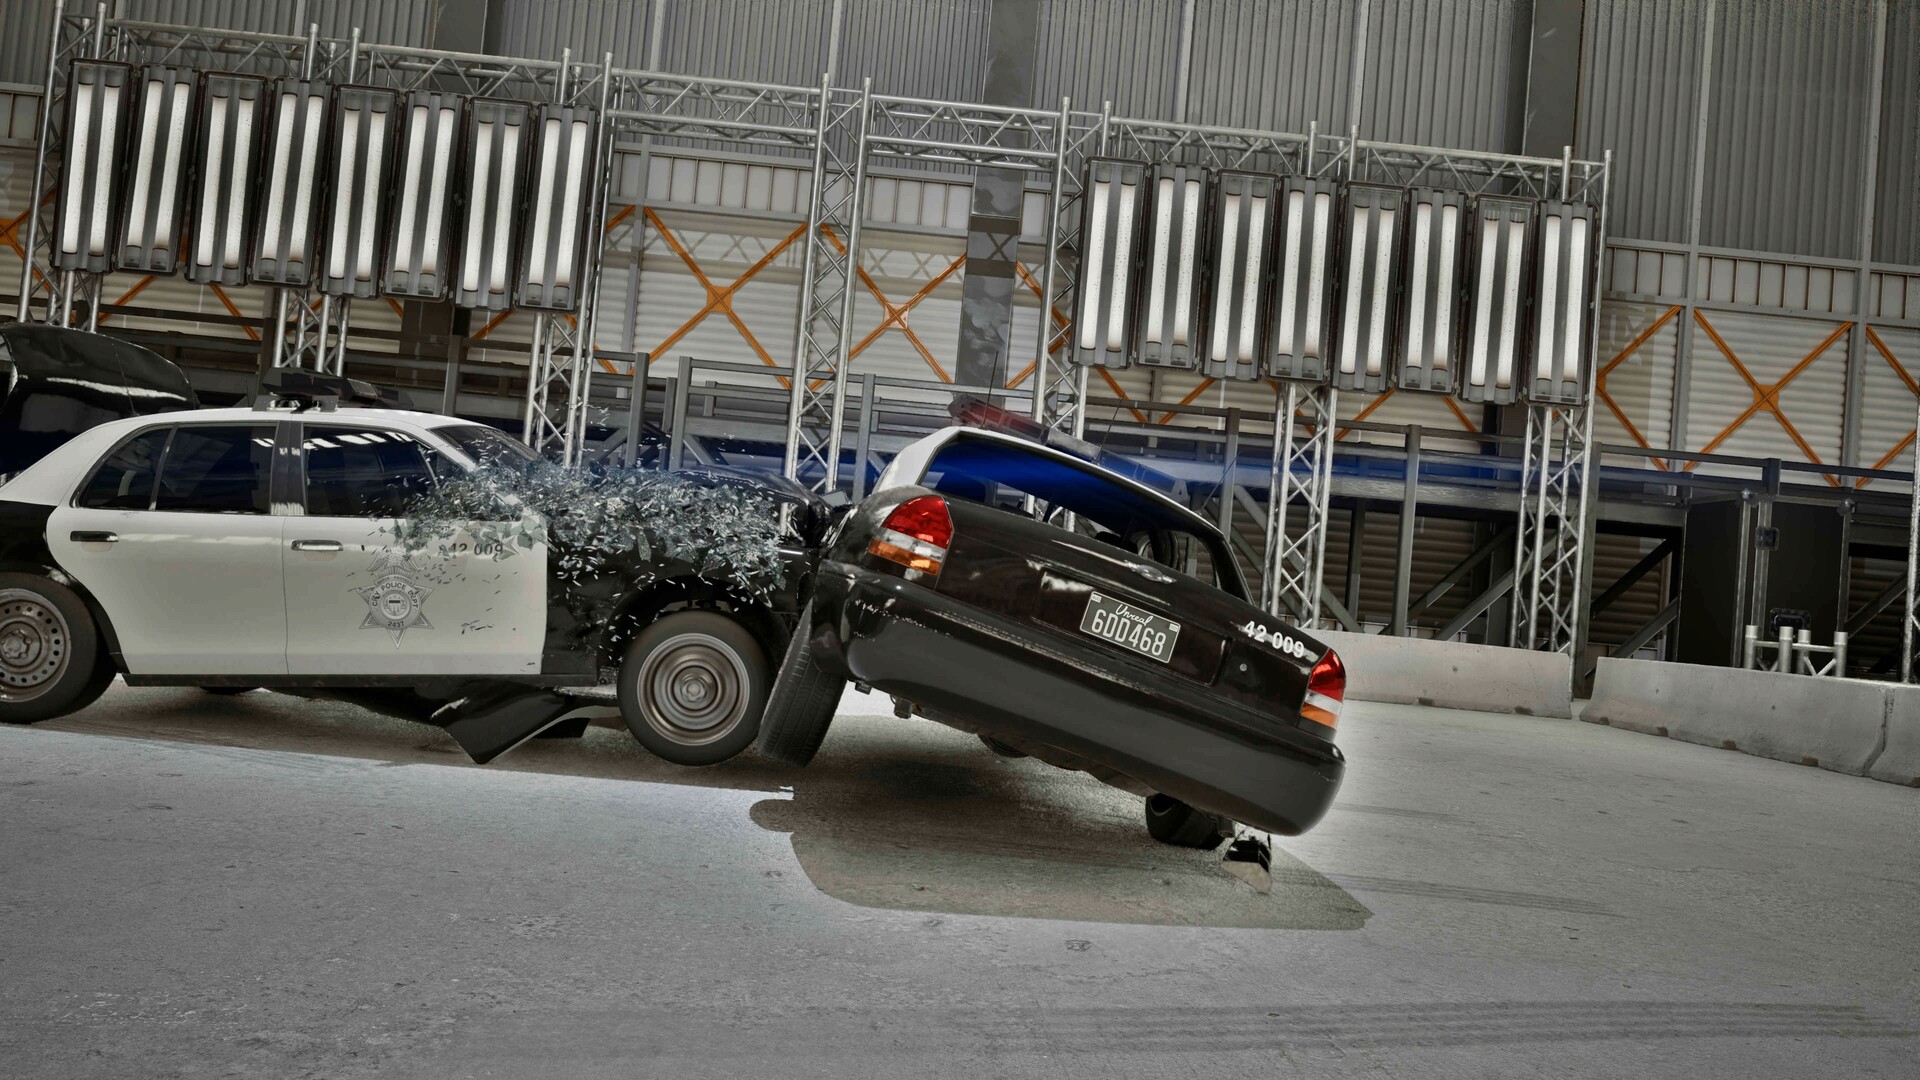 ArtStation - Luxury - Crash of Cars - Vehicle